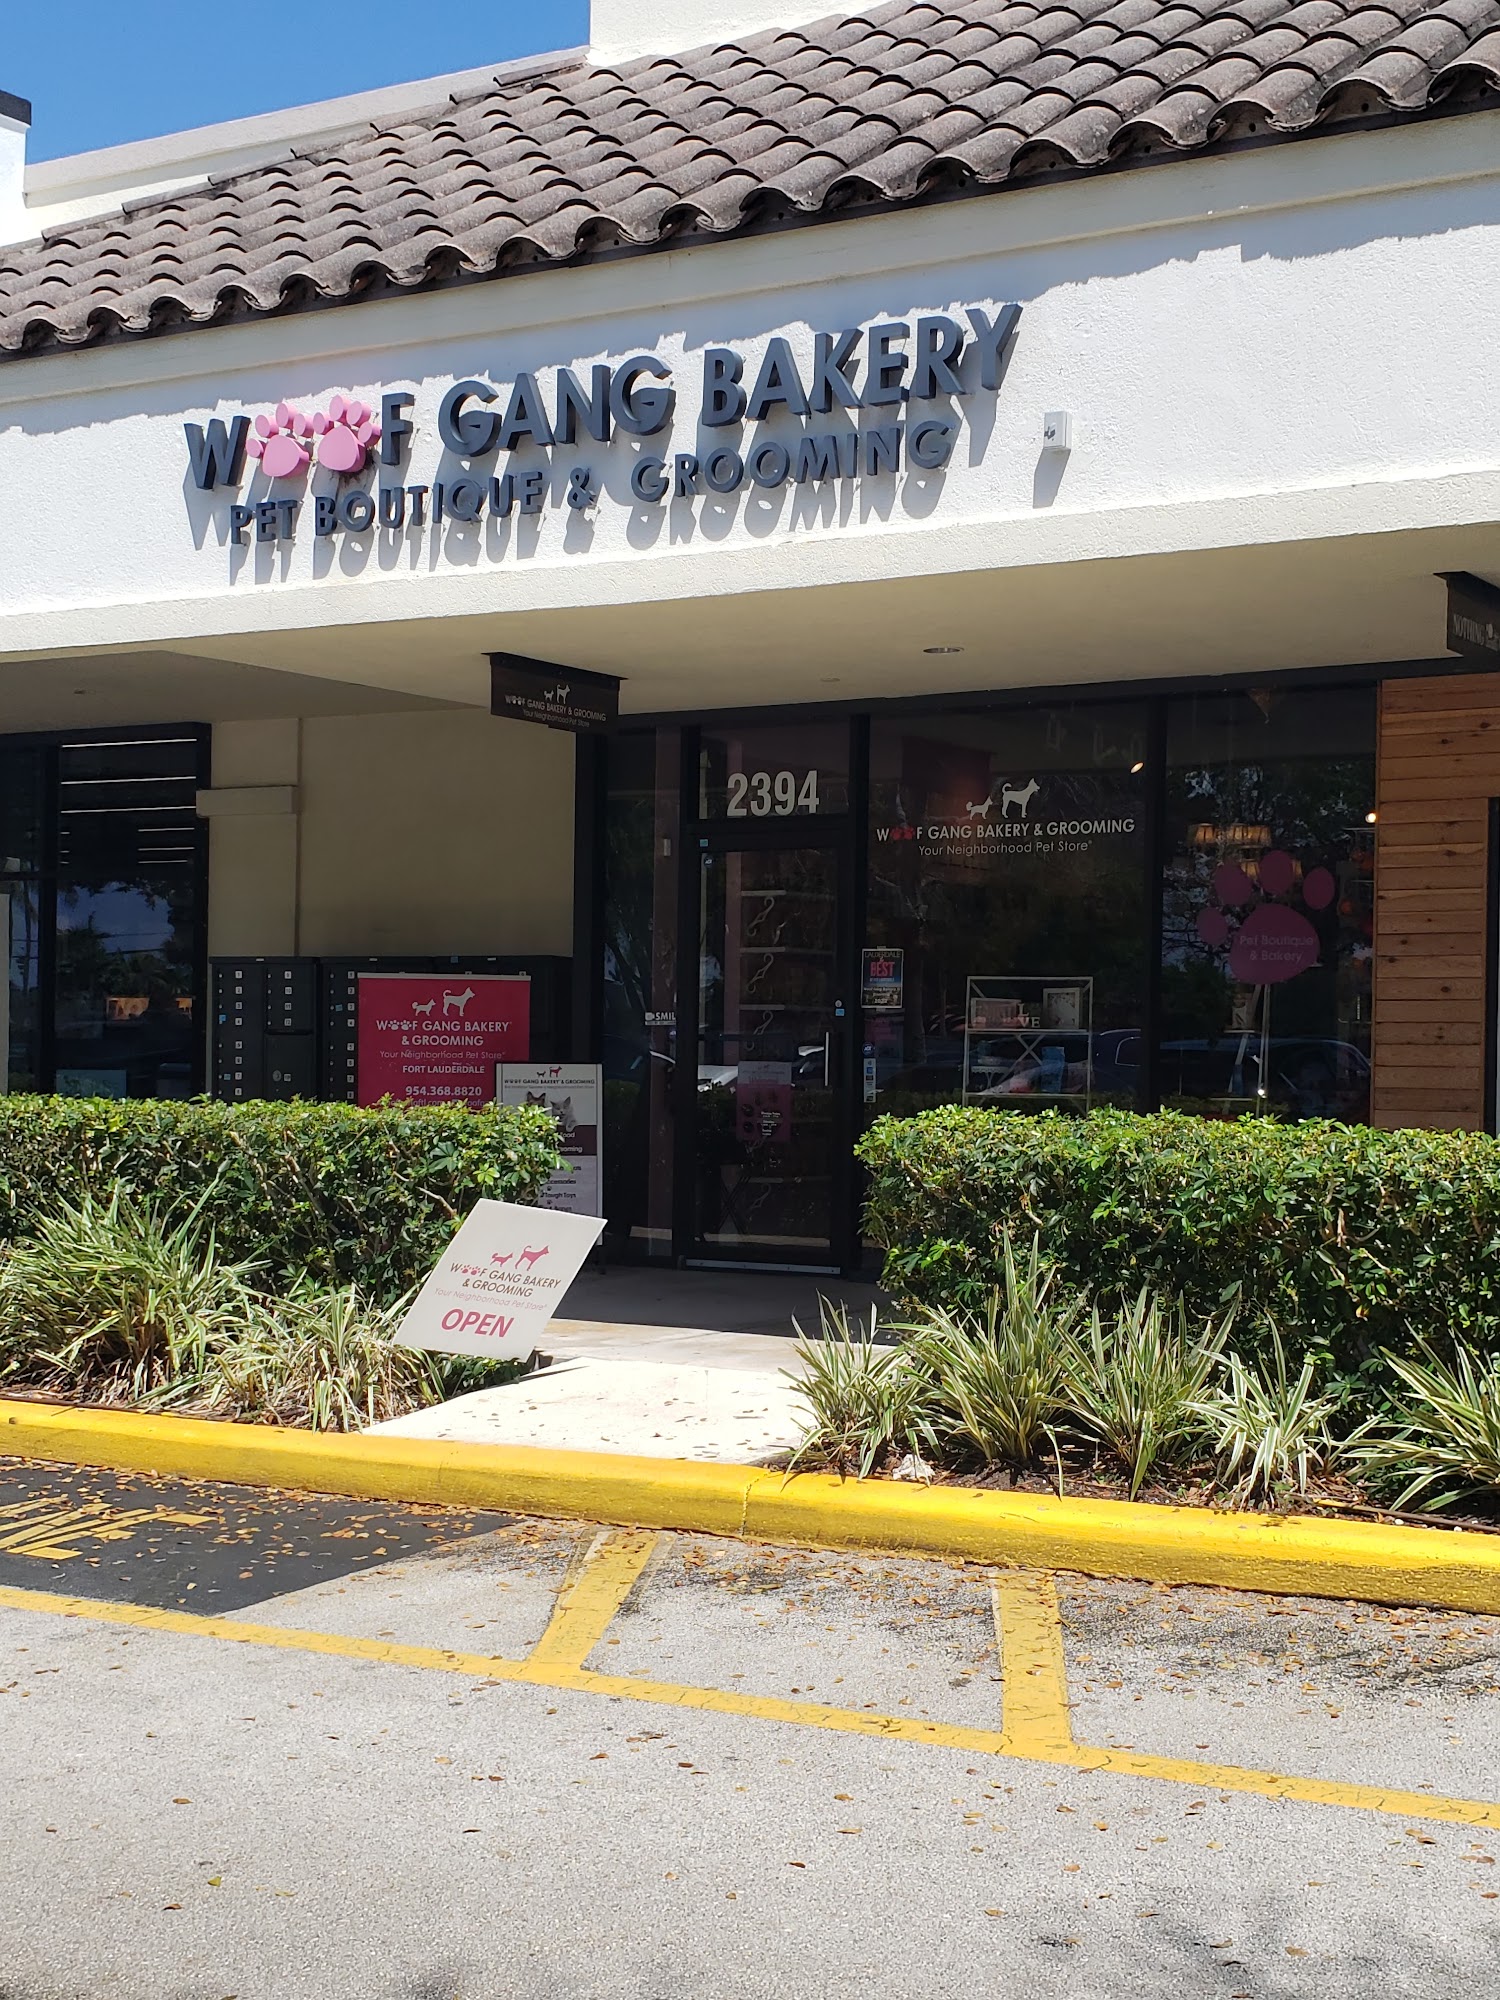 Woof Gang Bakery & Grooming Fort Lauderdale